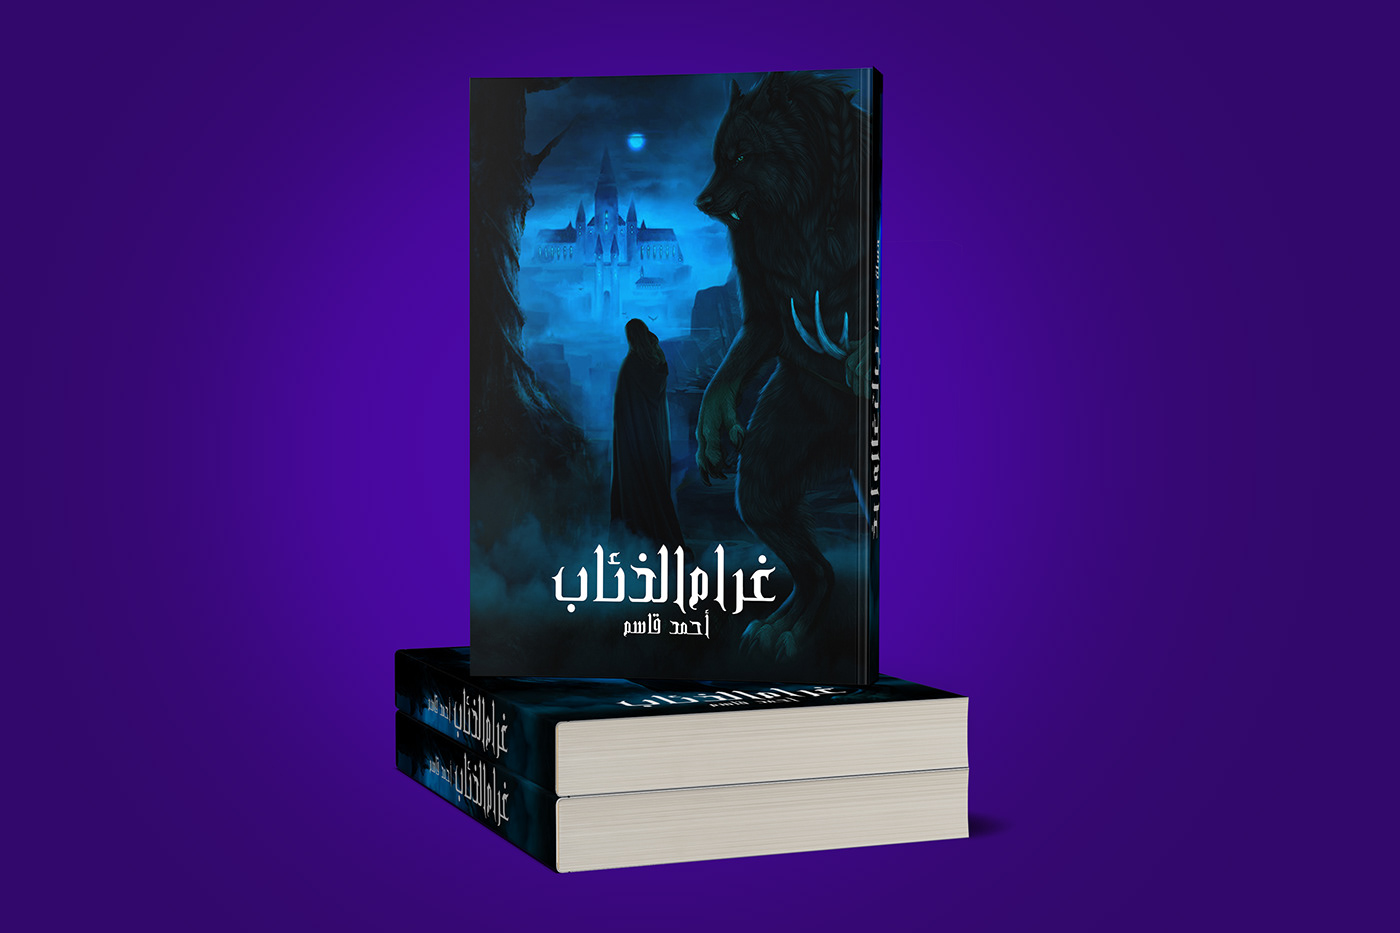 design Design of novel cover fayaum novel cover novel egypt book design book cover